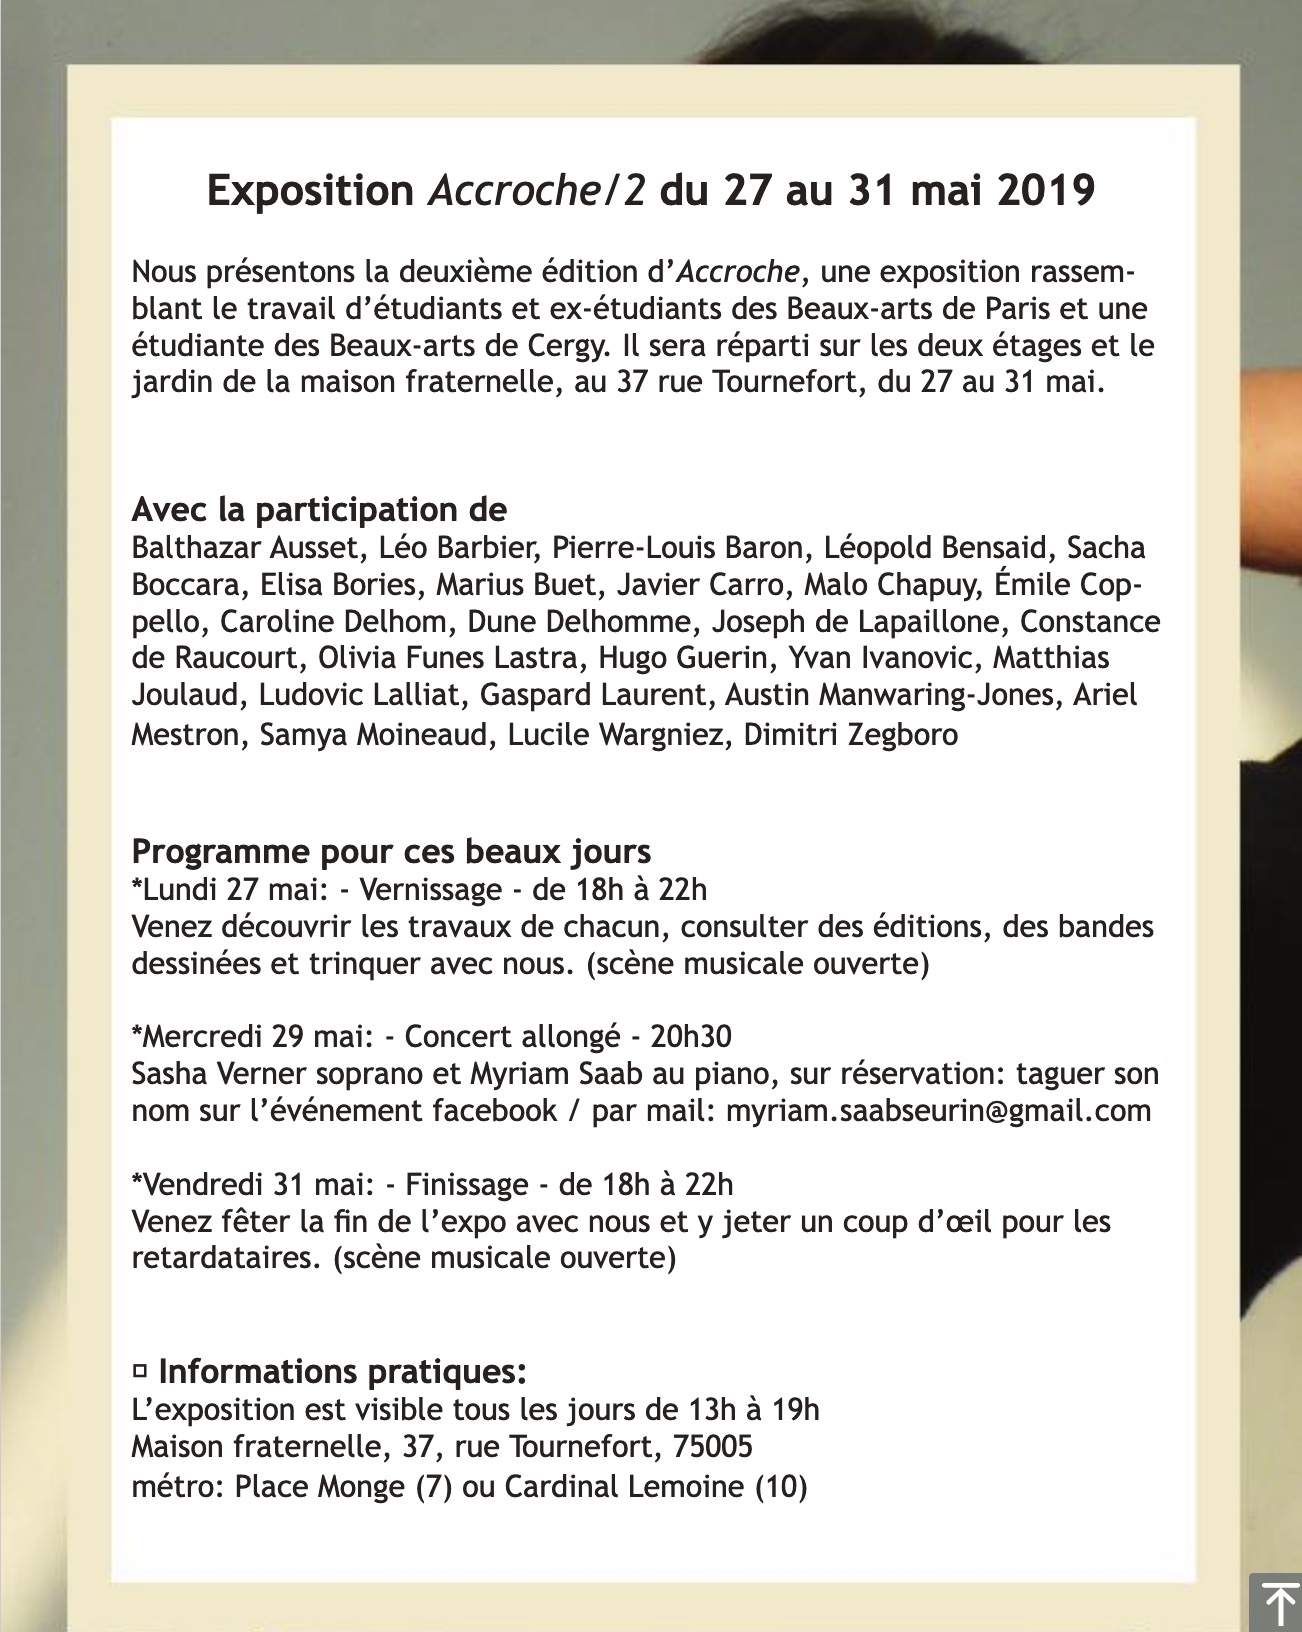 ACCROCHE/2 EXPOSITION D'ÉTUDIANTS DES BEAUX-ARTS DE PARIS